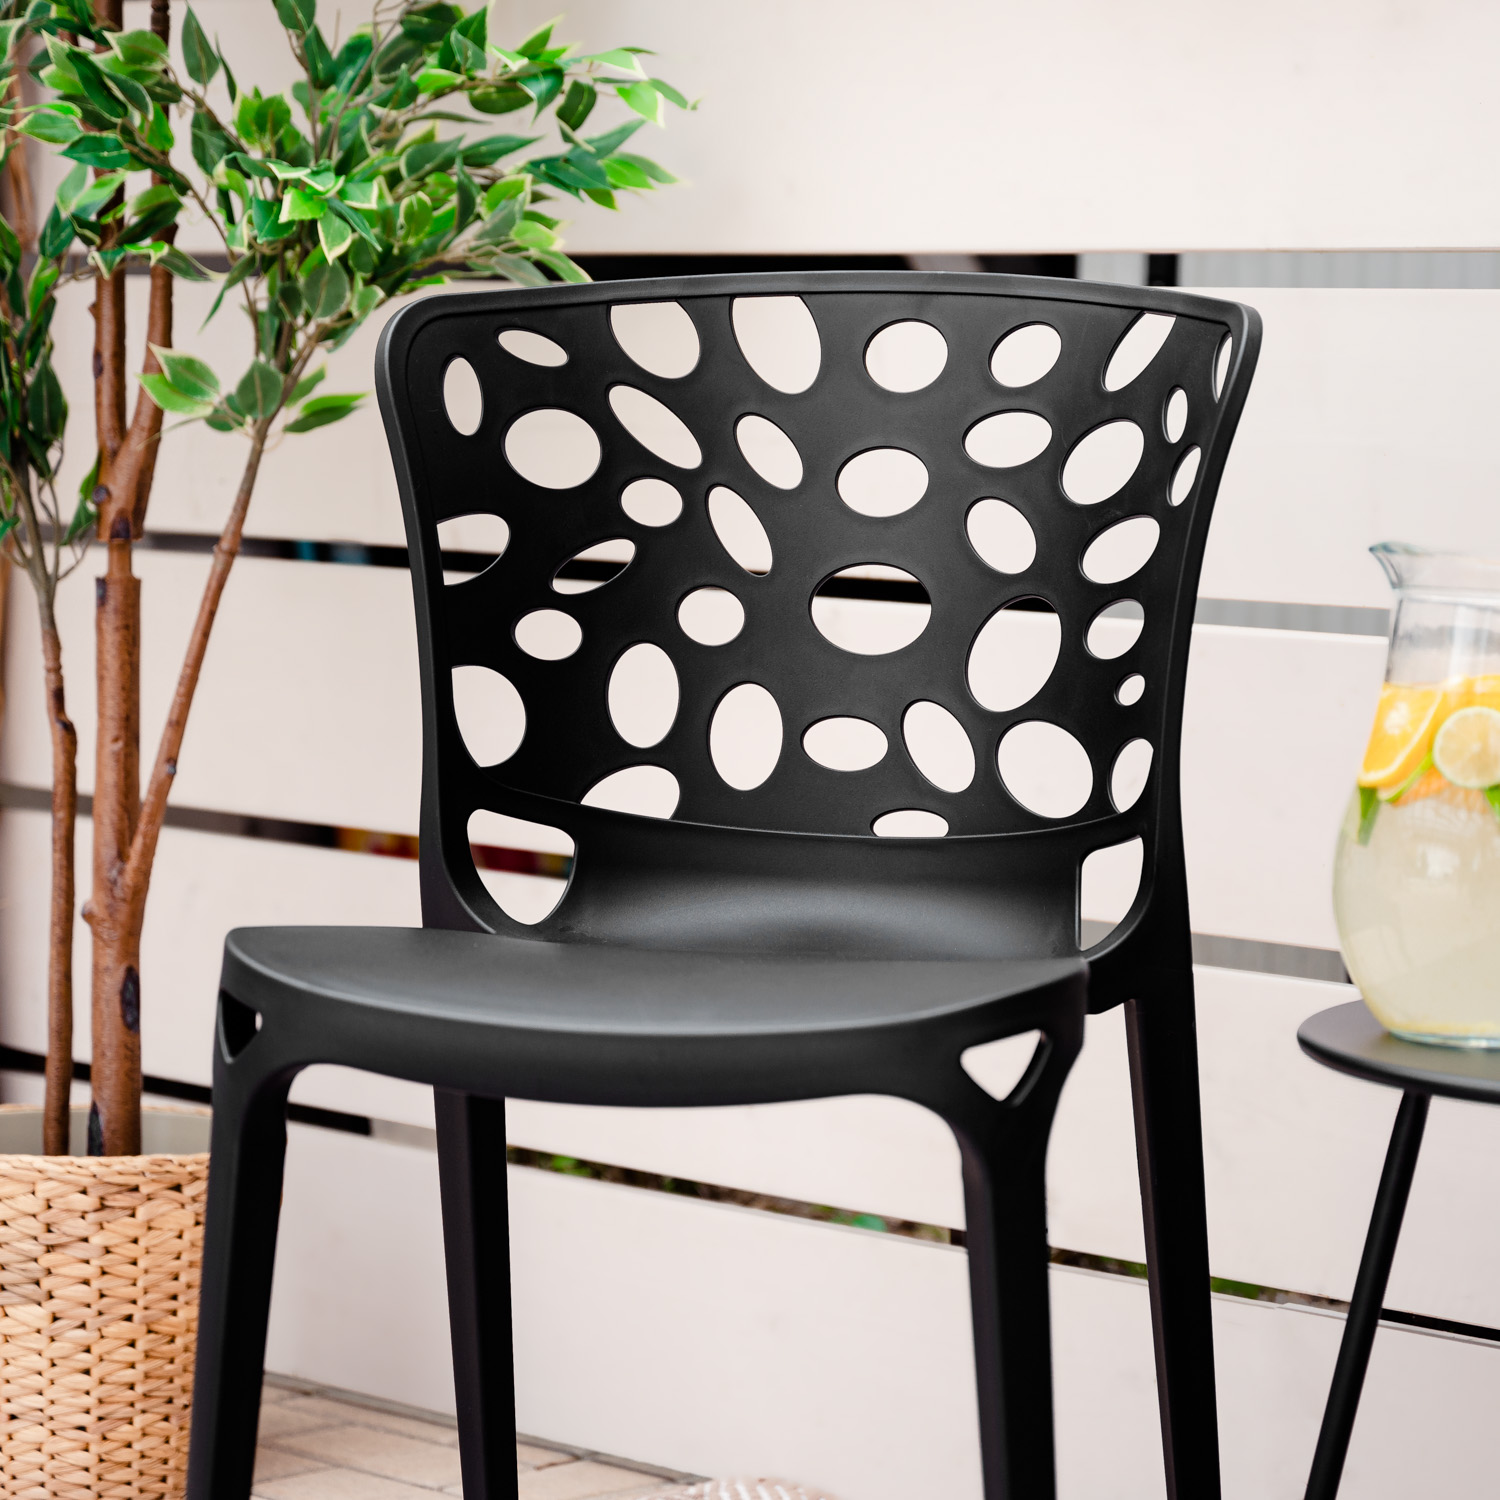 Chaise de jardin Lot de 6 Moderne Noir Chaises design Plastique Chaises exterieur Chaises empilable Chaise de cuisine